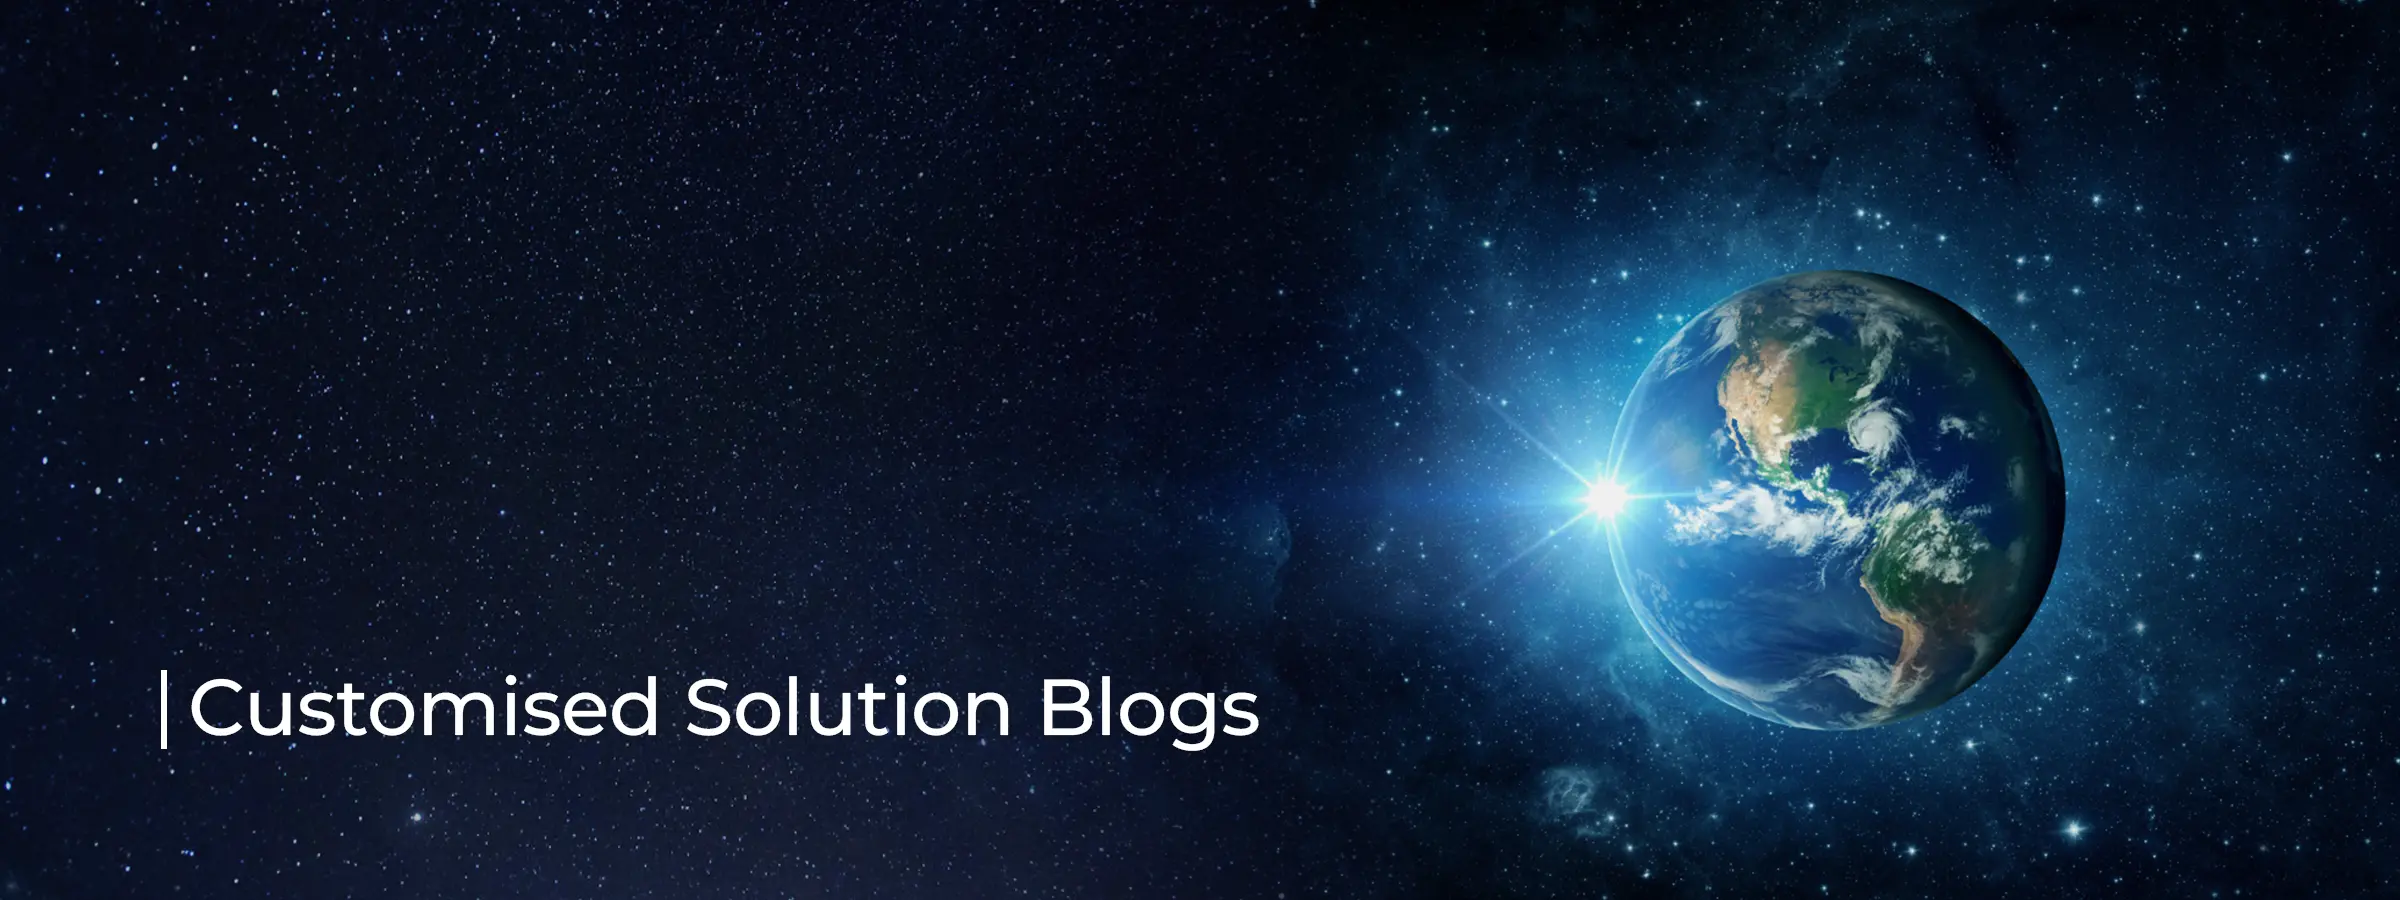 customised-solution-blog-banner